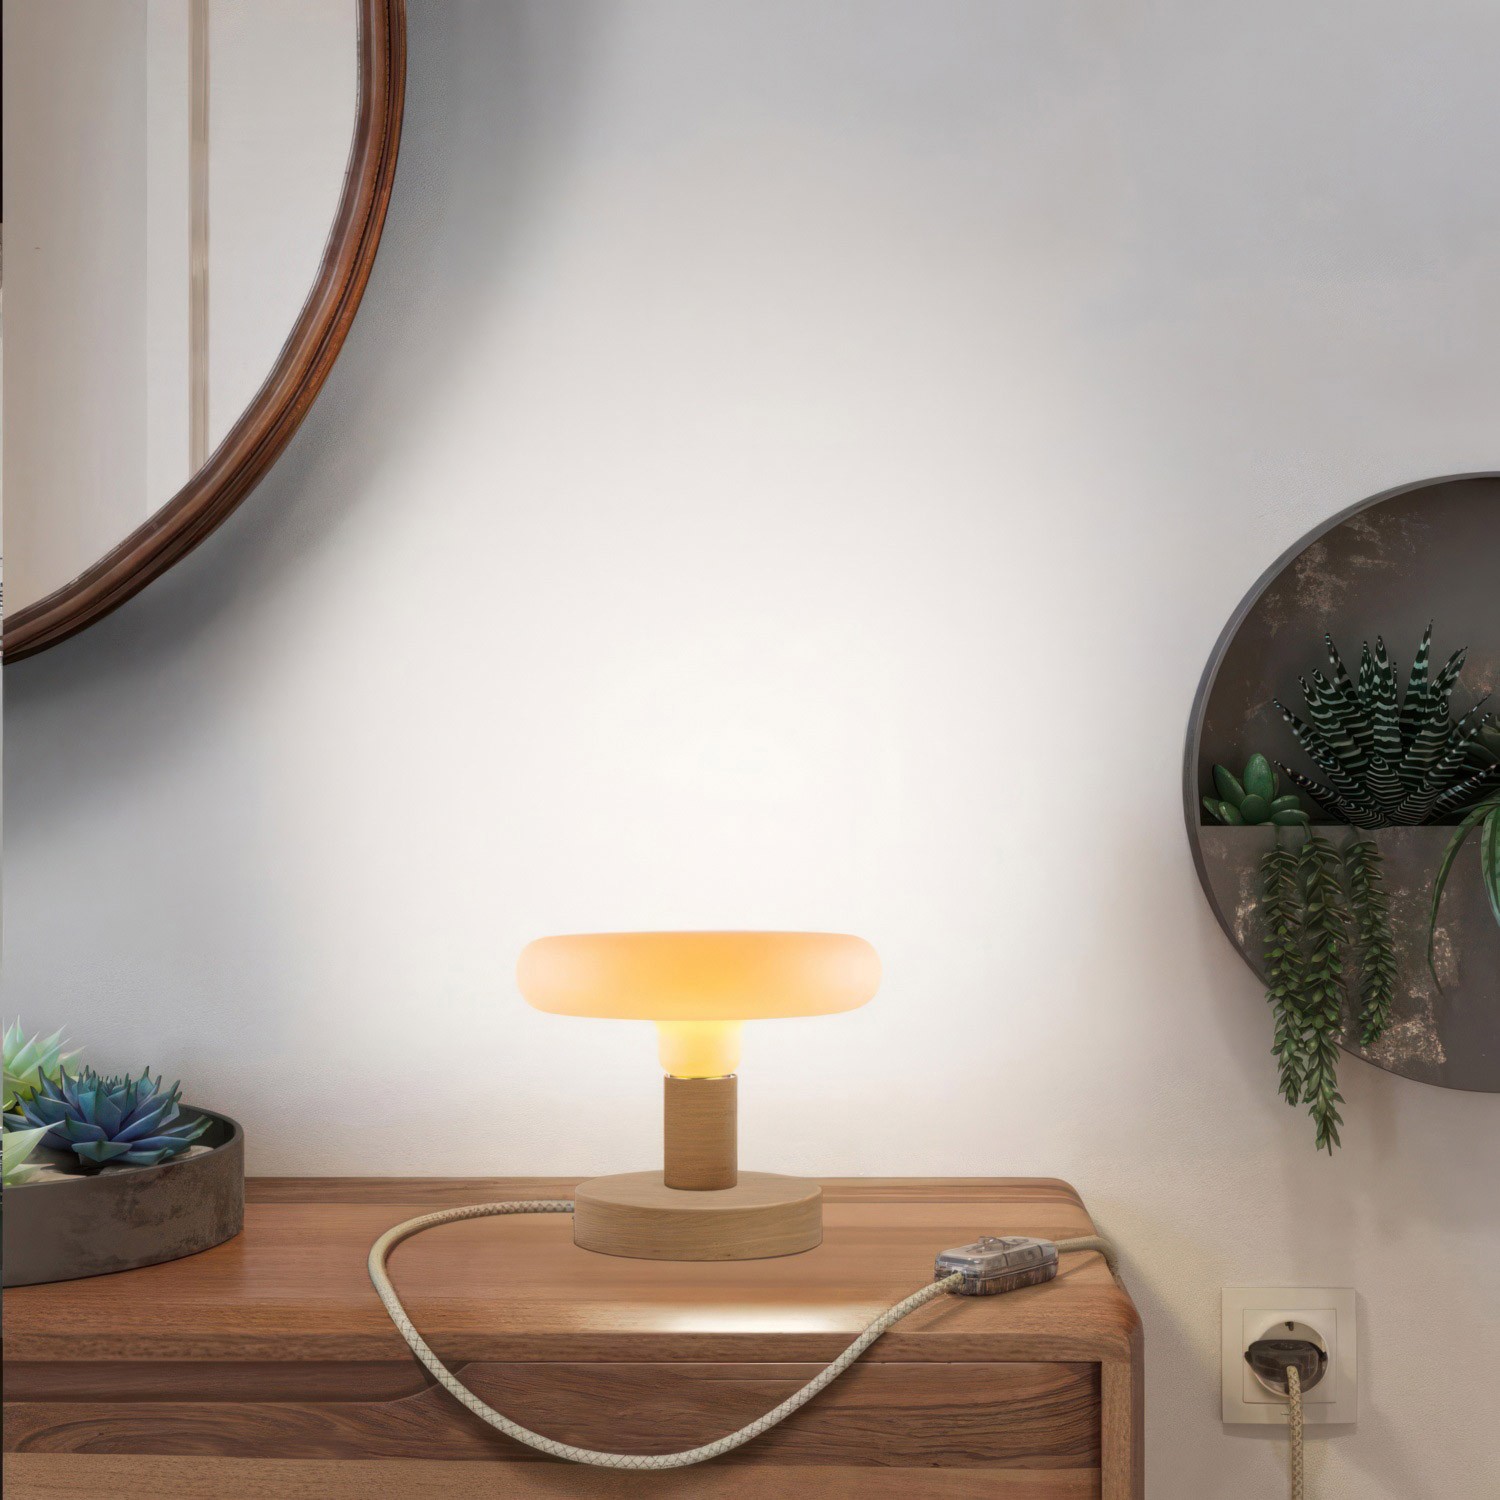 Lámpara de mesa de madera Posaluce Dash con clavija de 2 polos